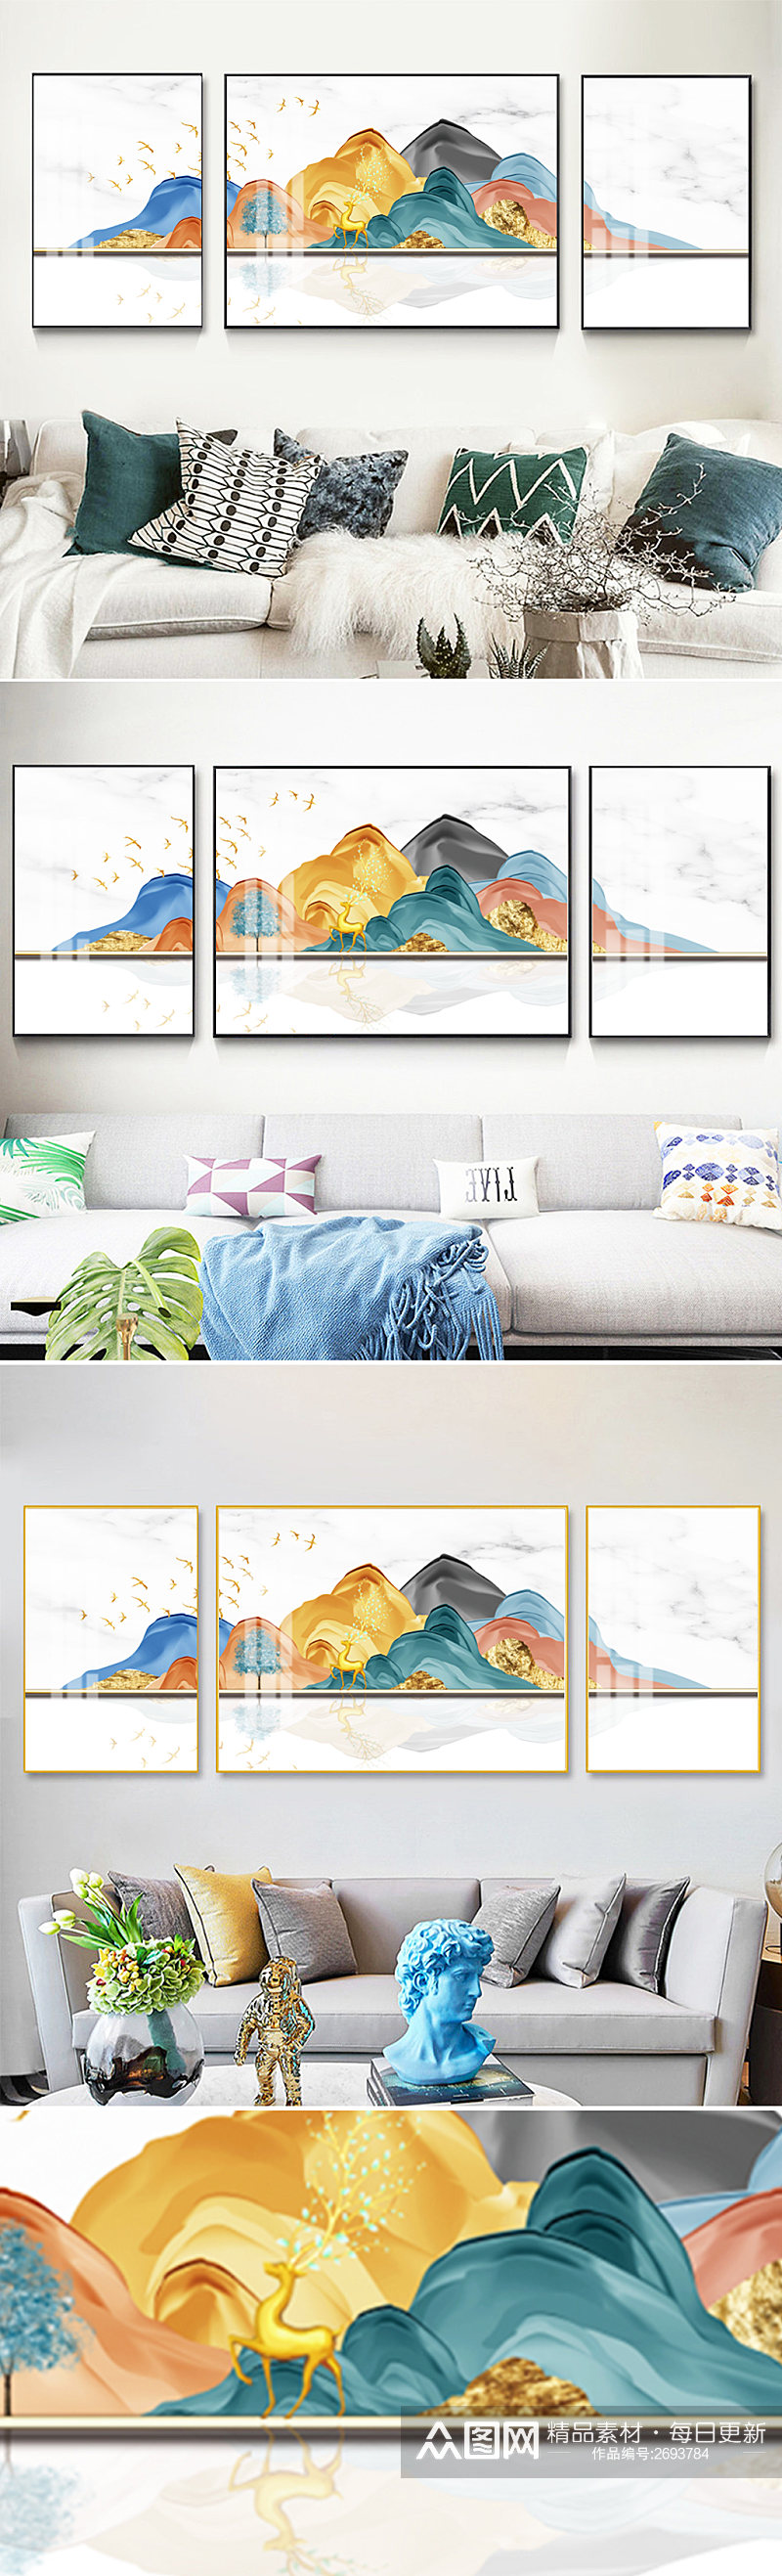 彩色山体立体客厅三联装饰画素材